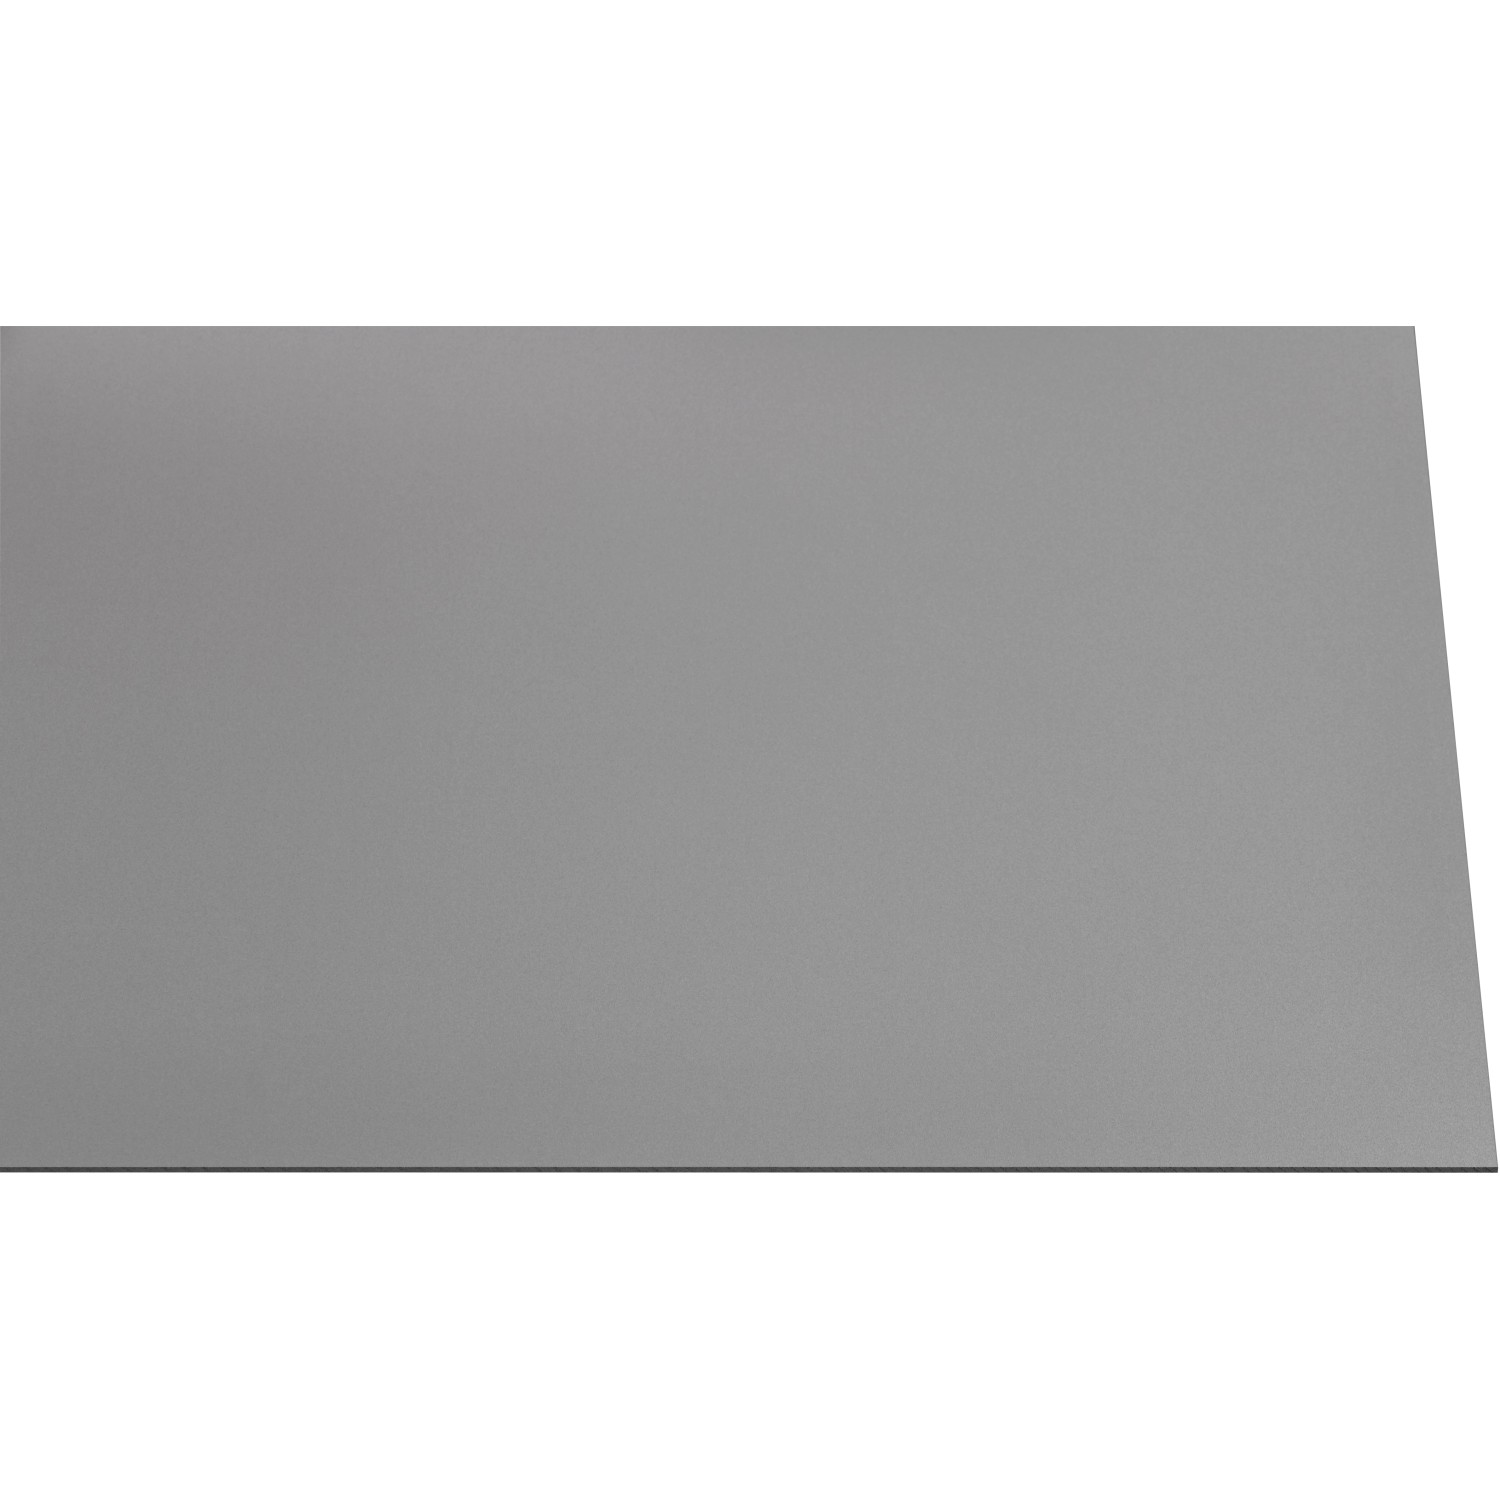 Kunststoffplatte Guttagliss Hobbycolor Grau 50 cm x 25 cm kaufen bei OBI